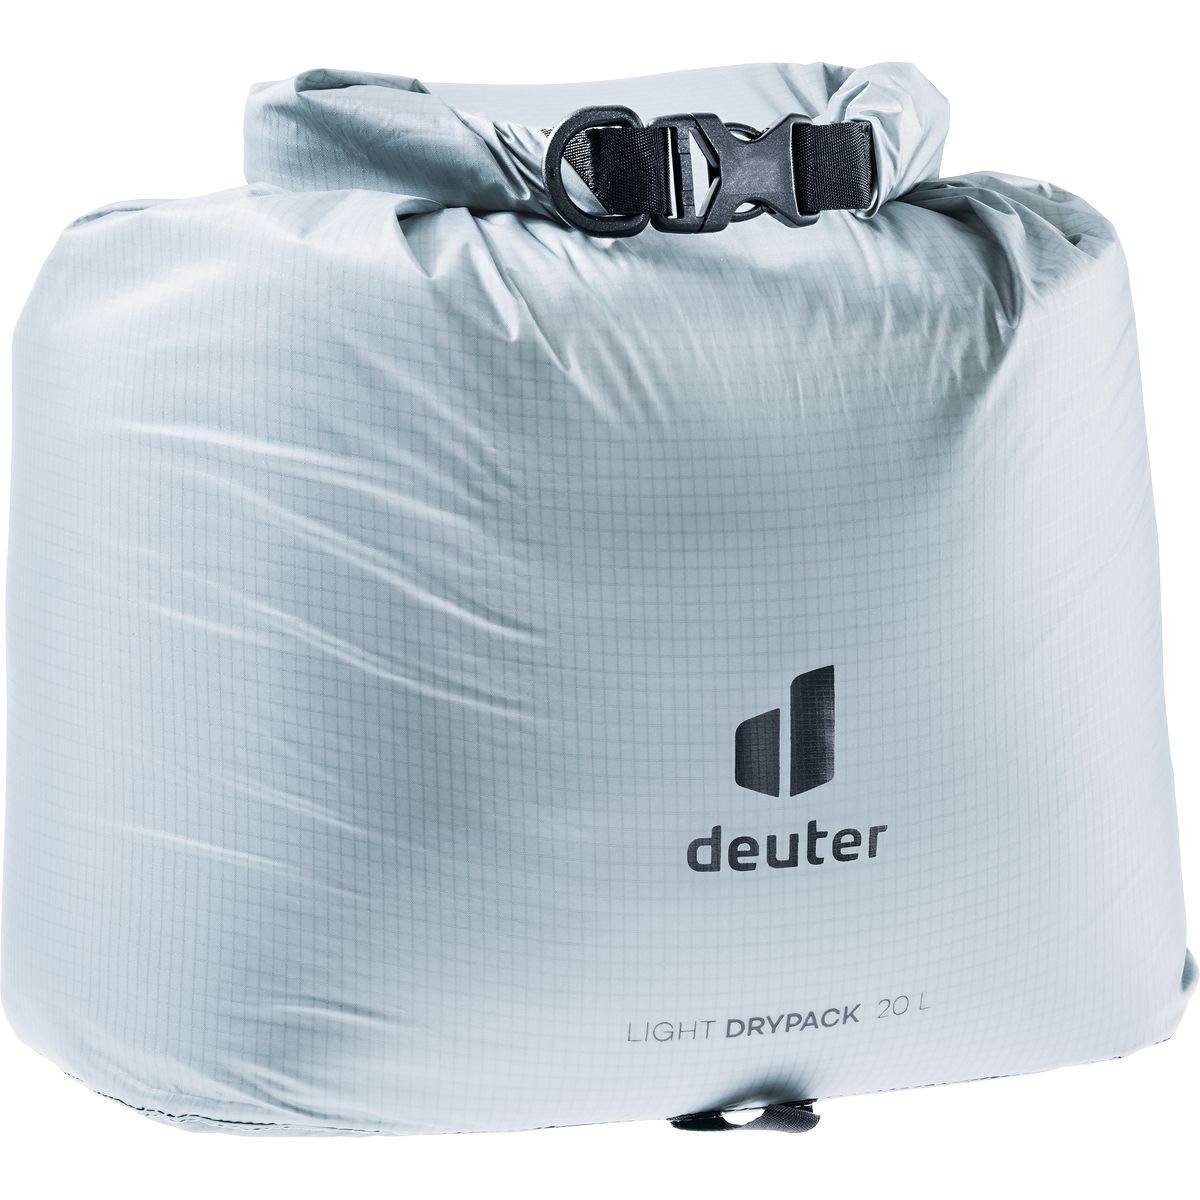 Deuter Light Drypack 20 Beutel / Kleintasche